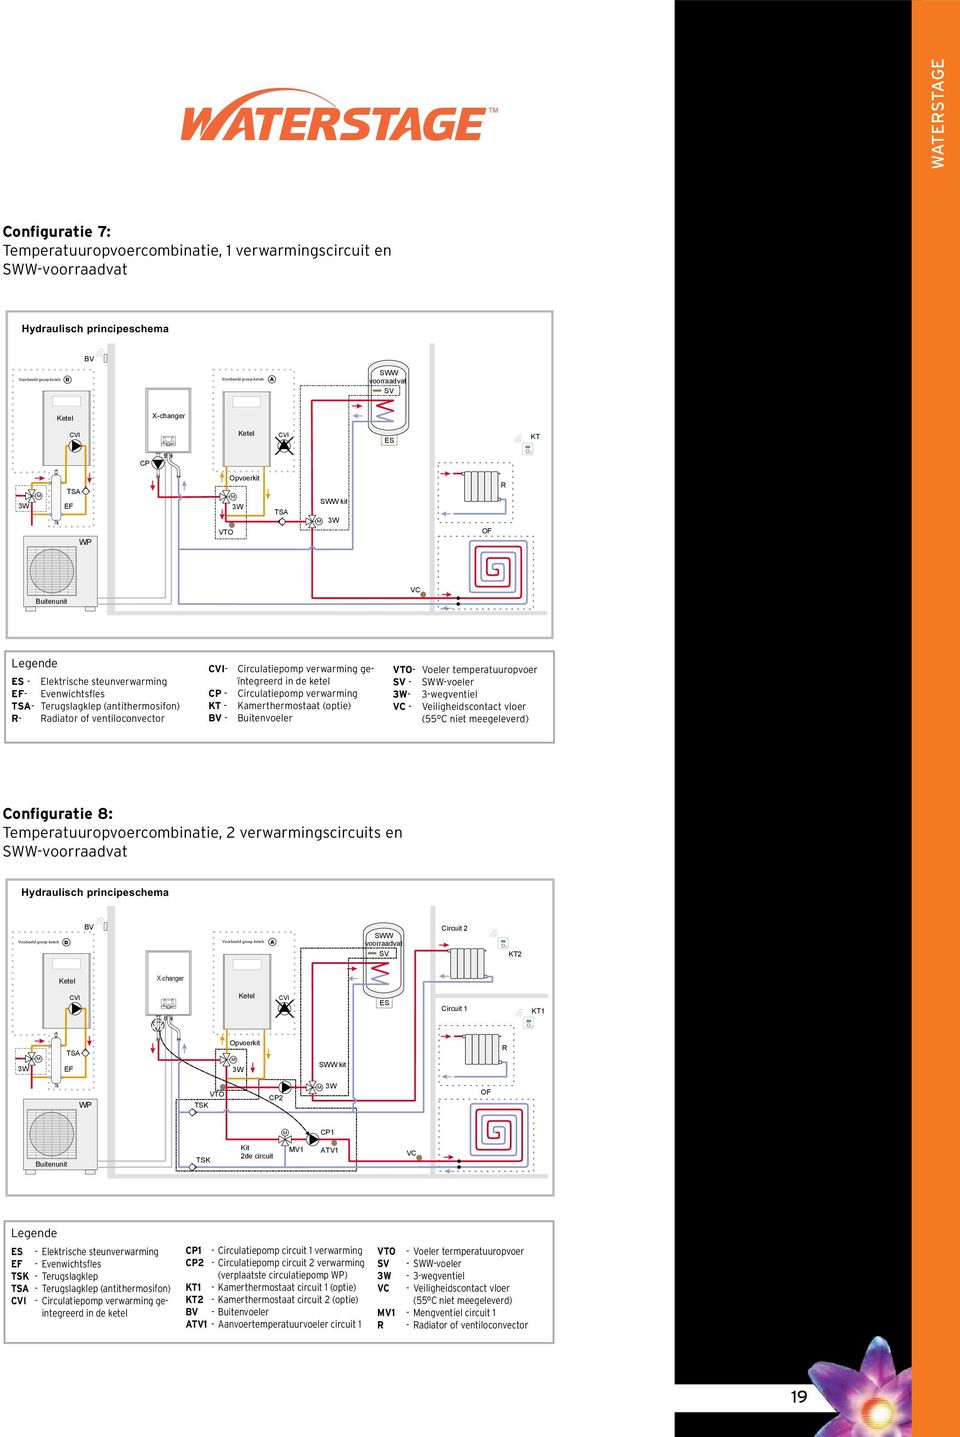 Voeler temperatuuropvoer SV - SWW-voeler - 3-wegventiel - Veiligheidscontact vloer (55 C niet meegeleverd) Configuratie 8: Temperatuuropvoercombinatie, 2 verwarmingscircuits en SWW-voorraadvat